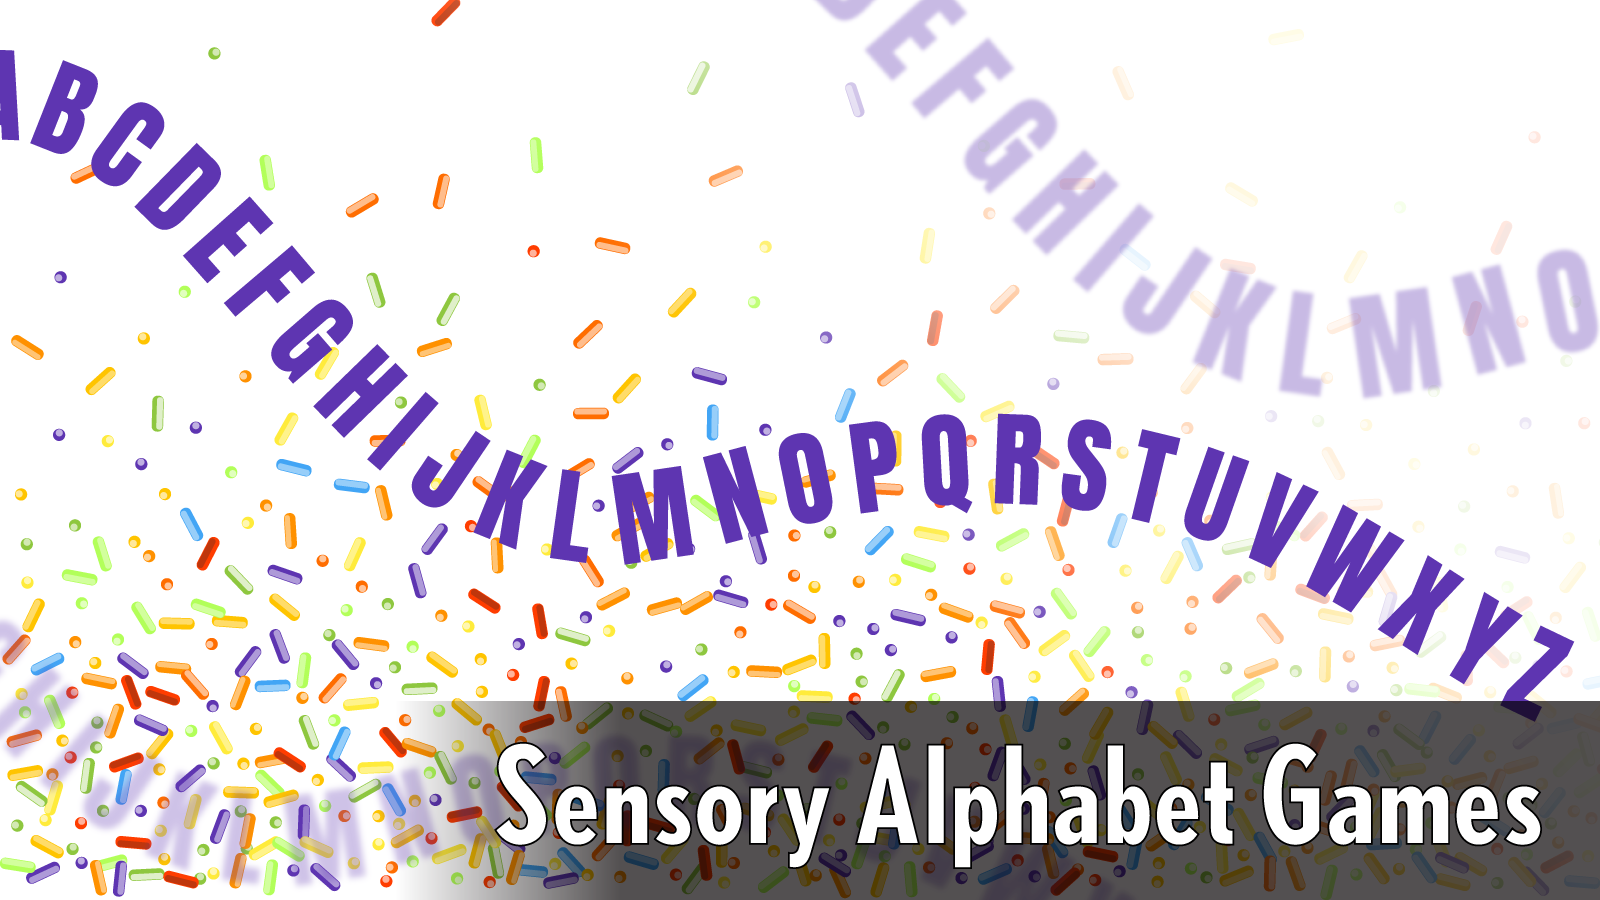 Sensory Alphabet Games